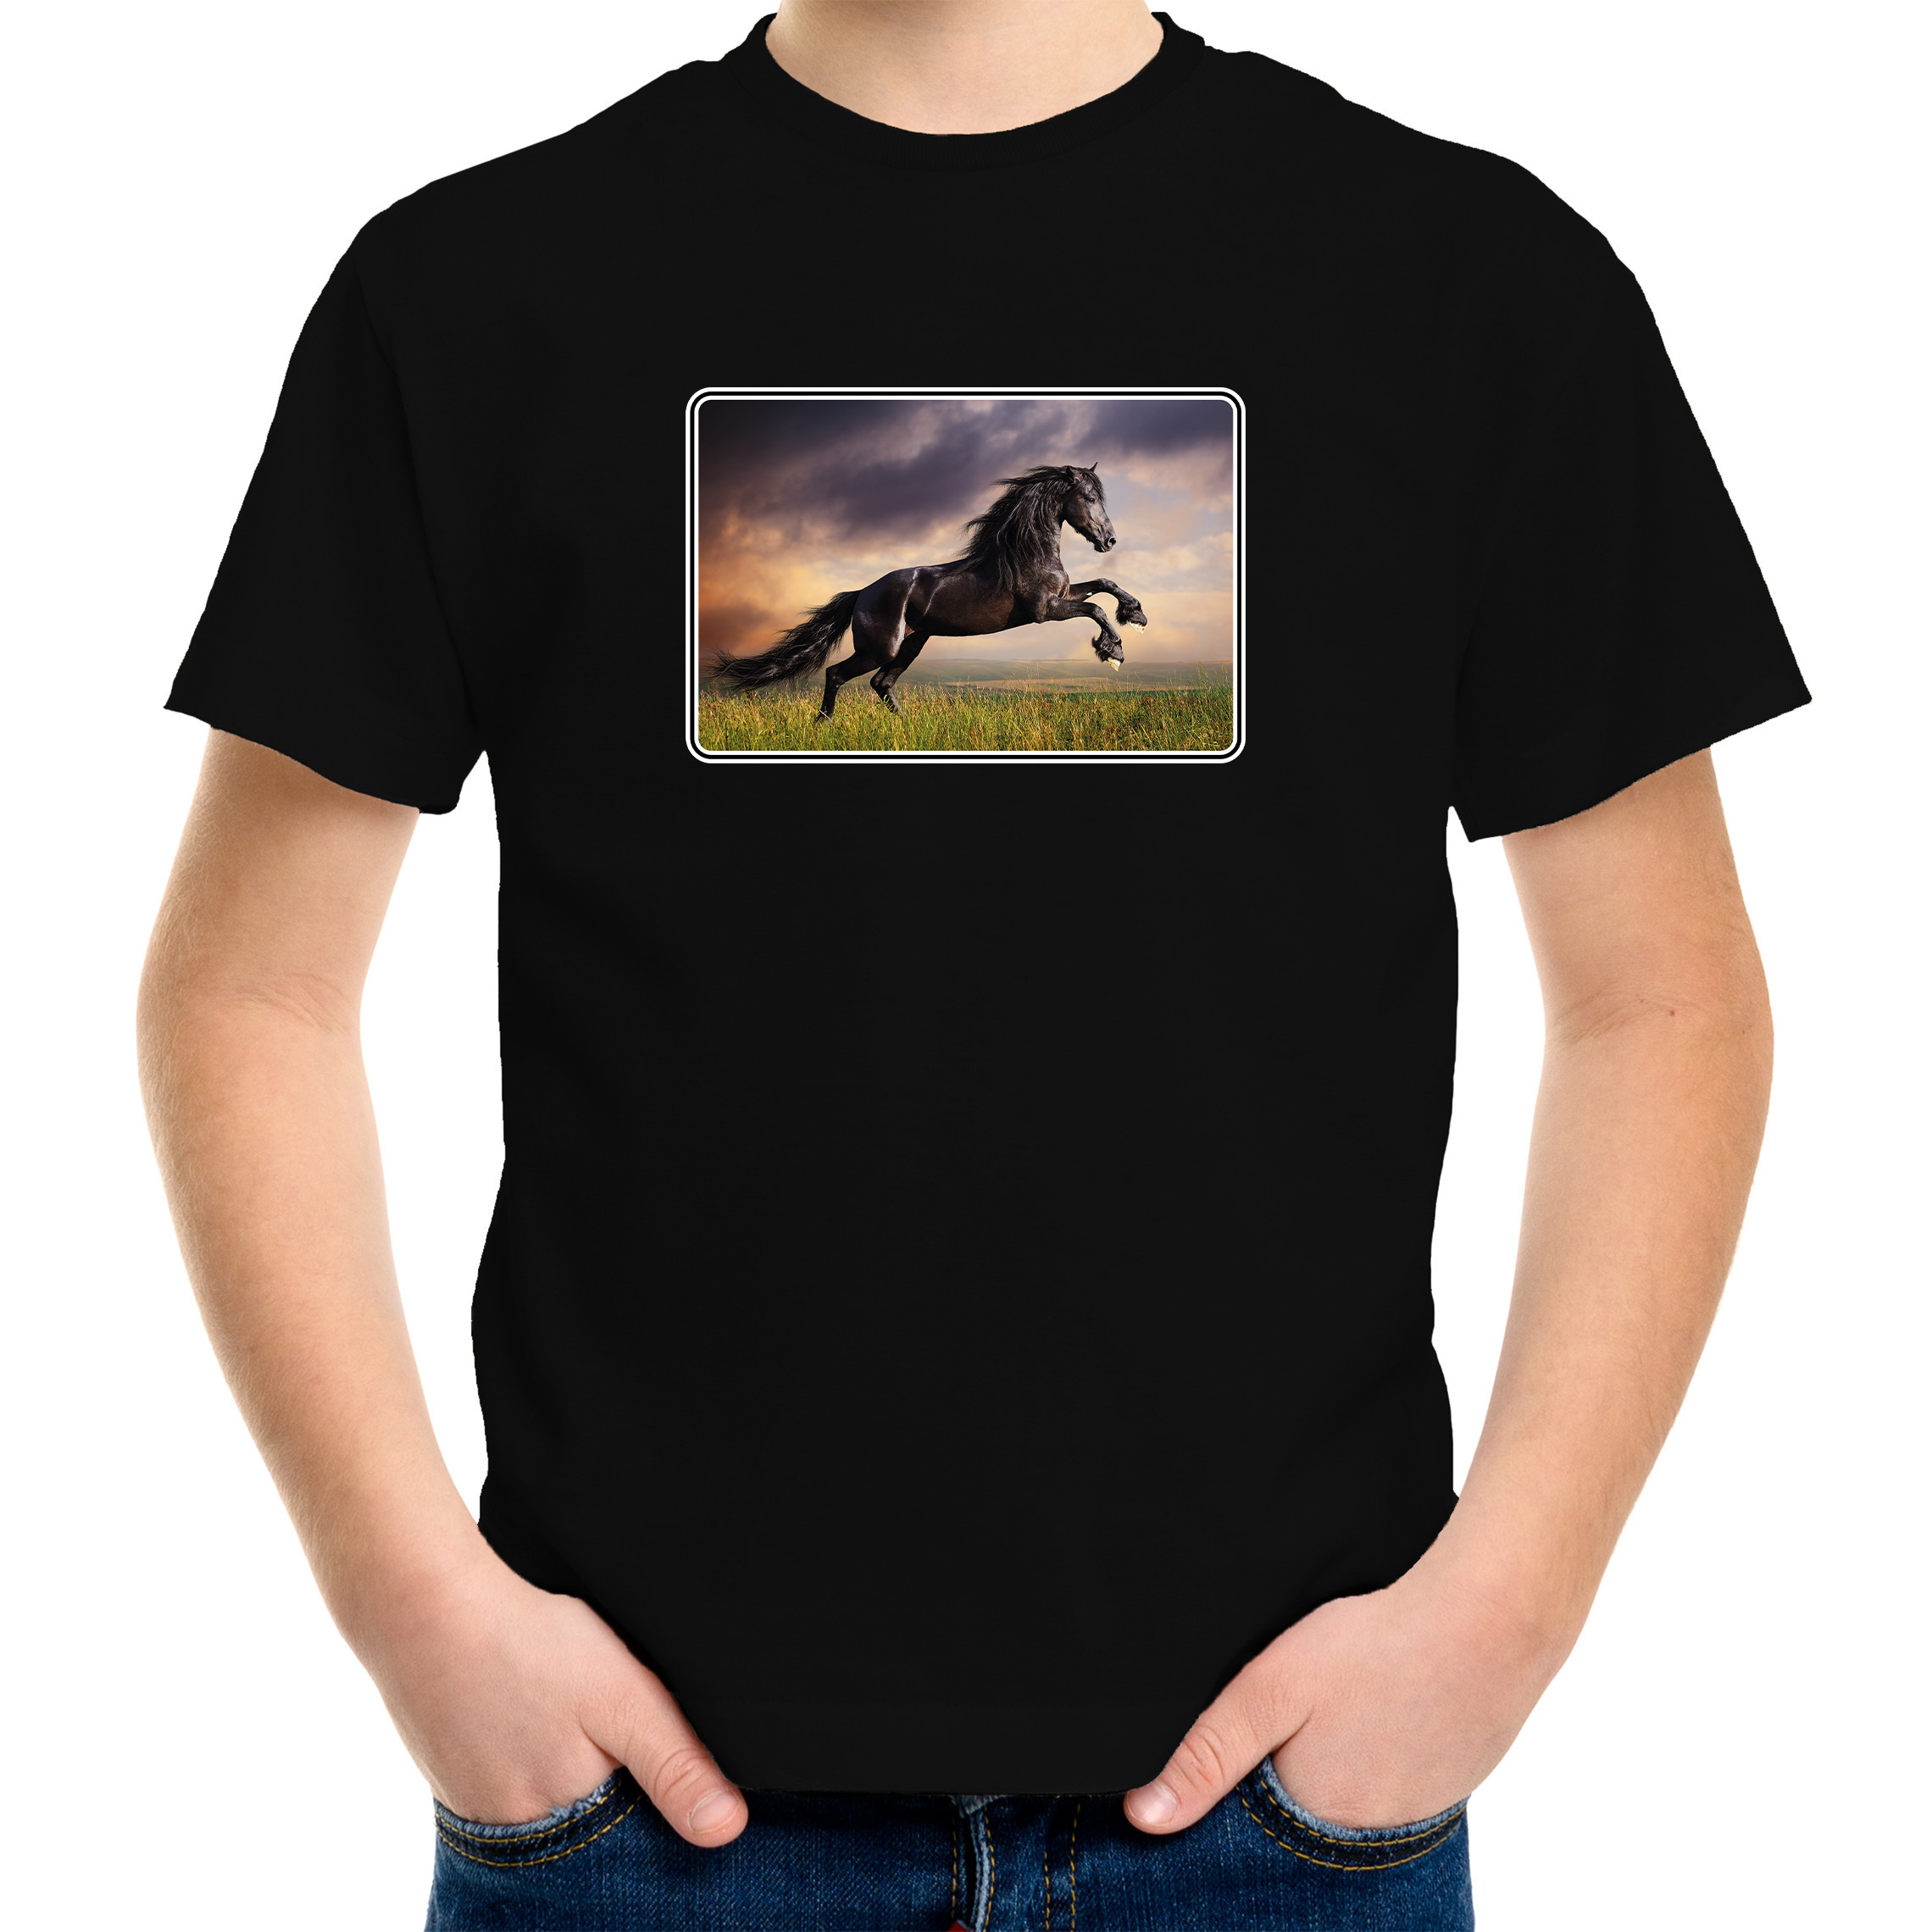 Dieren t-shirt met paarden foto zwart voor kinderen